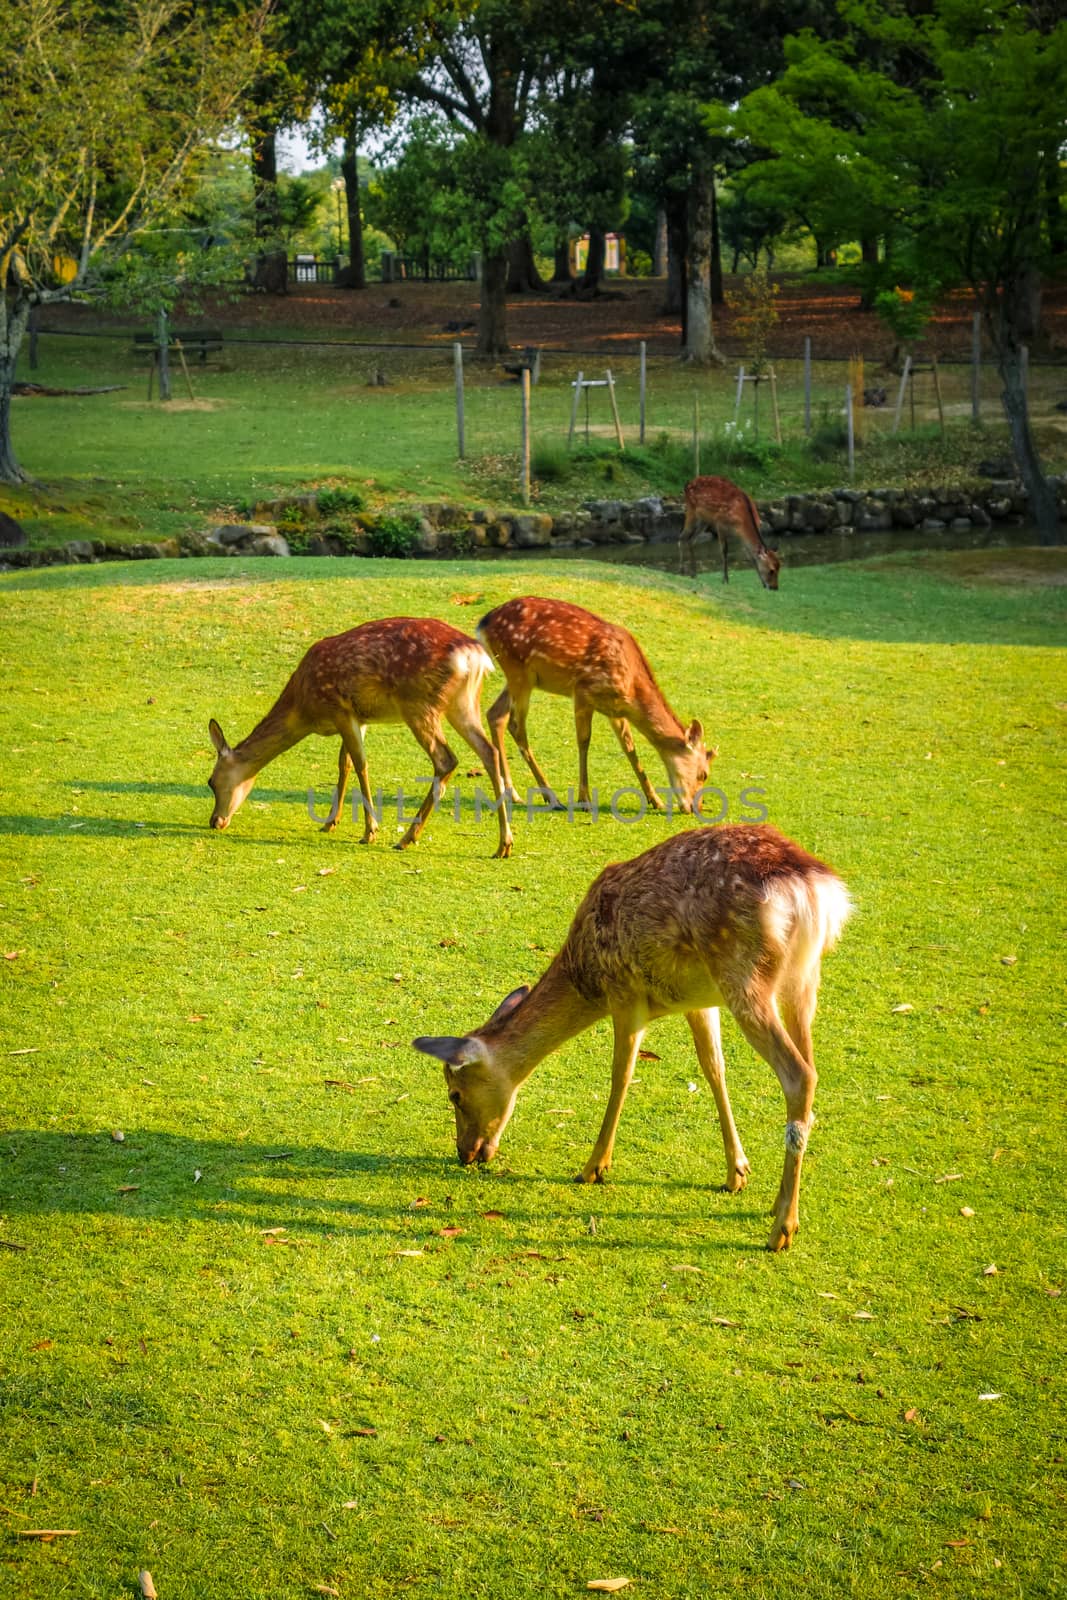 Wild Sika deers in Nara Park, Japan